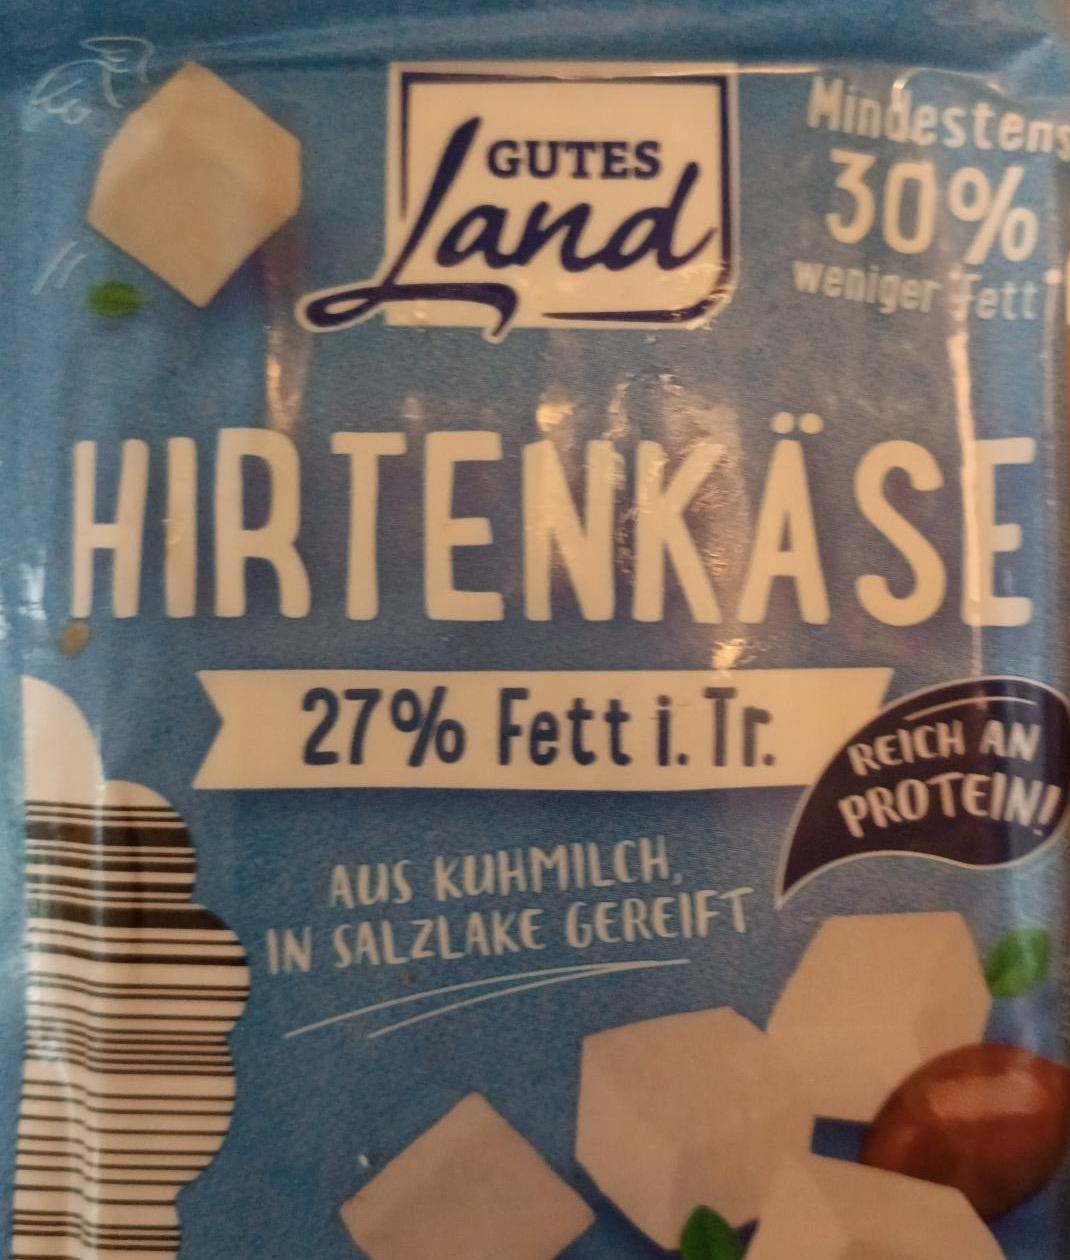 Фото - Hrtenkäse 27% Fett i.Tr Gutes Land